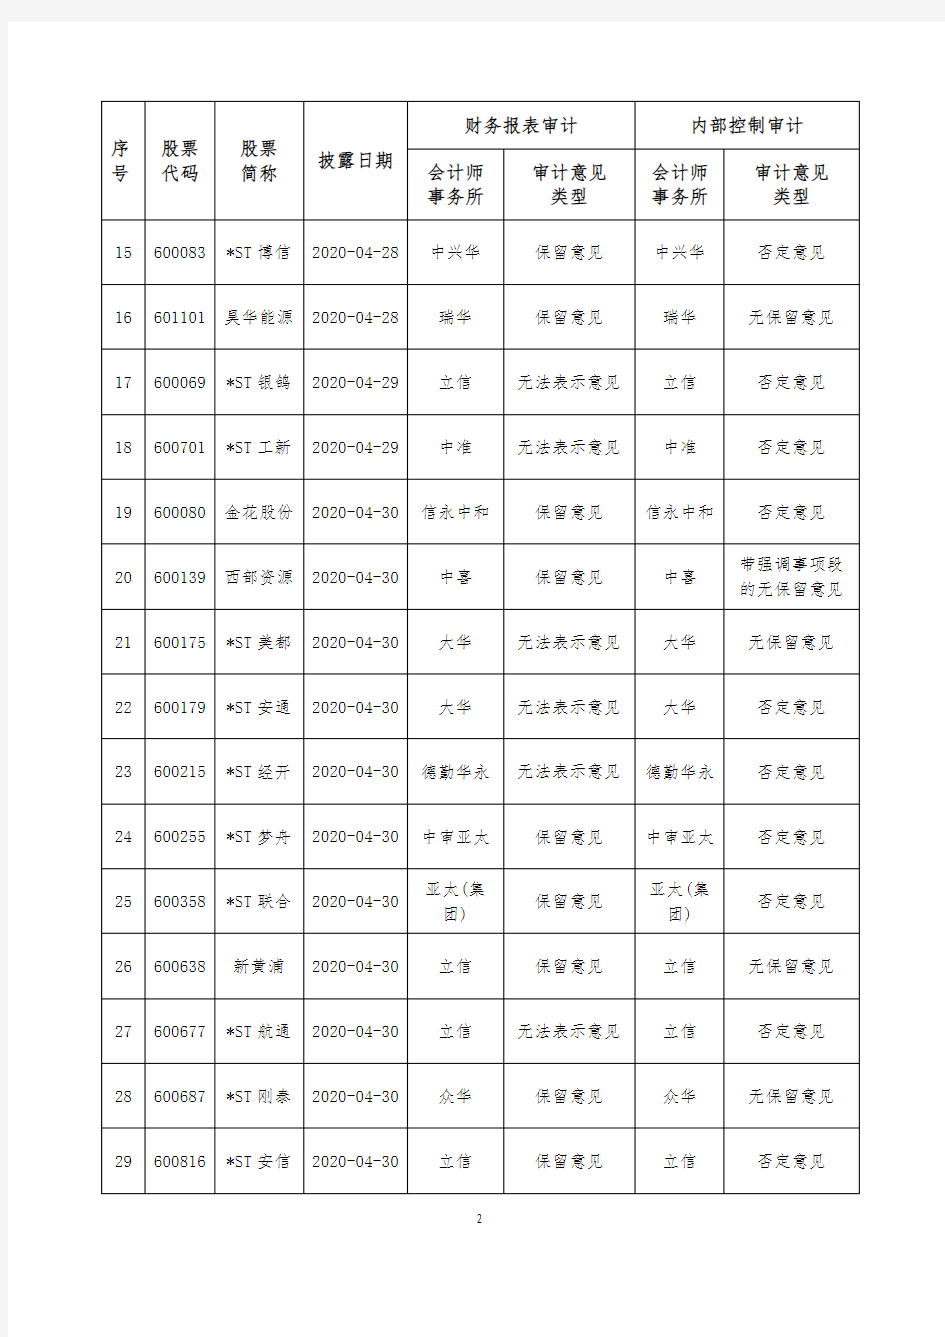 5.上市公司2019年度非无保留意见审计报告统计表(截至2020年5月31日)